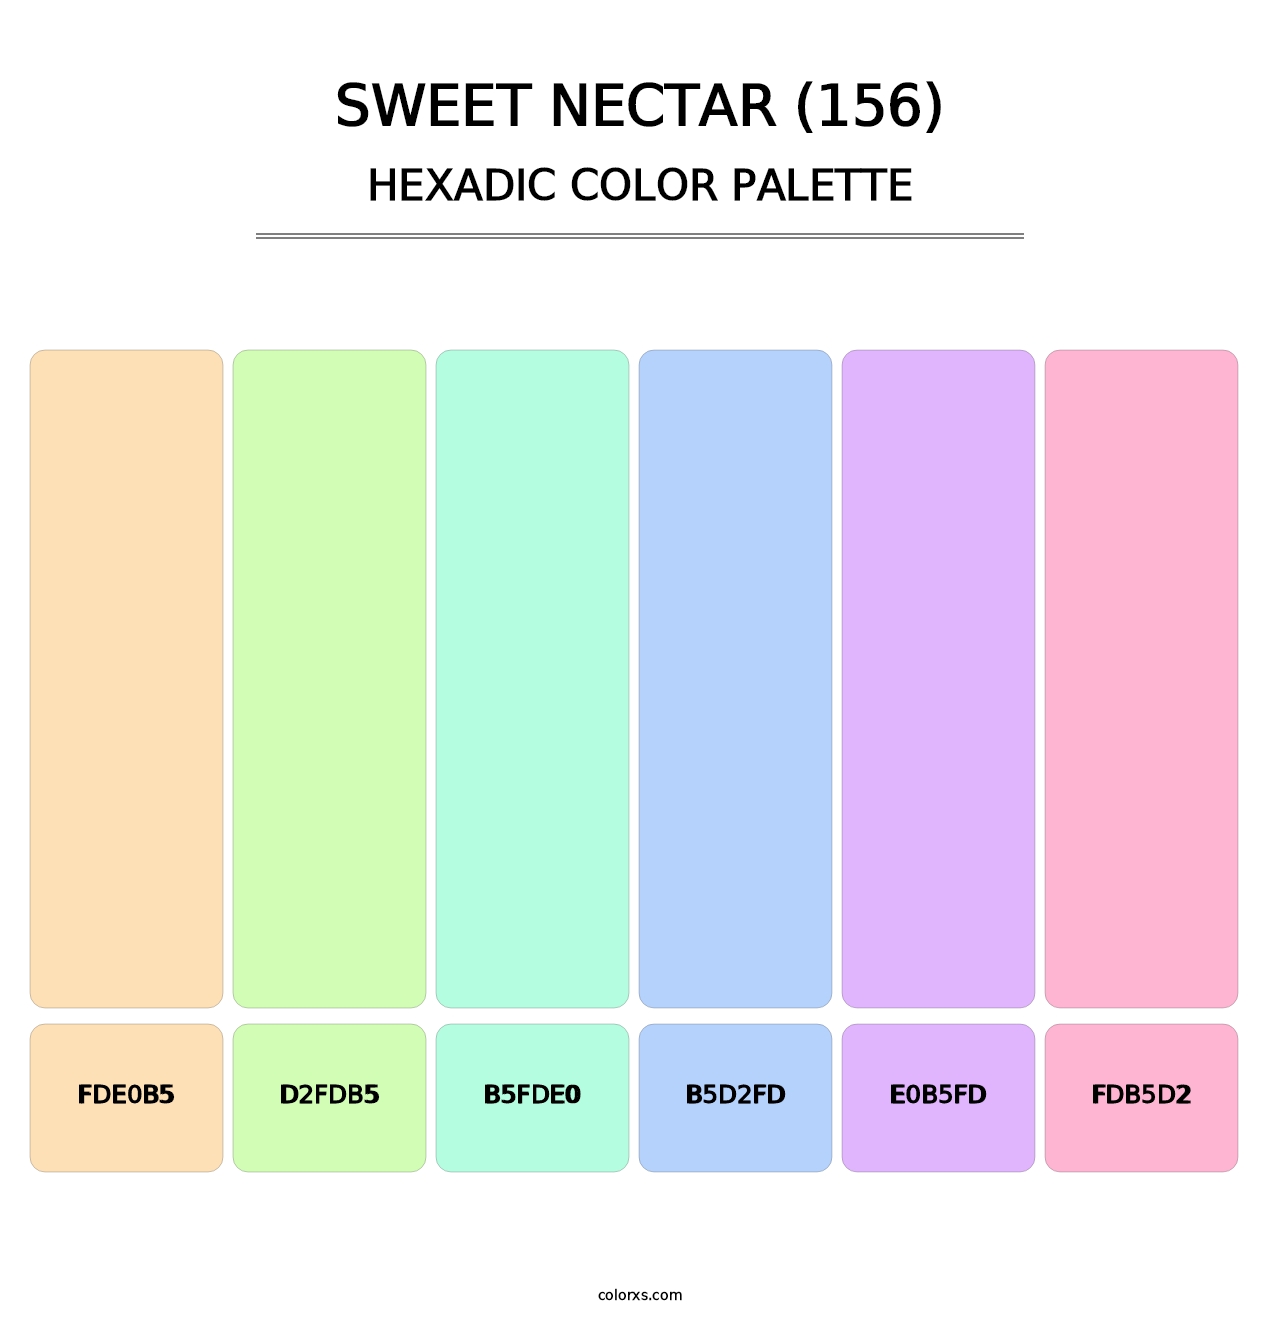 Sweet Nectar (156) - Hexadic Color Palette